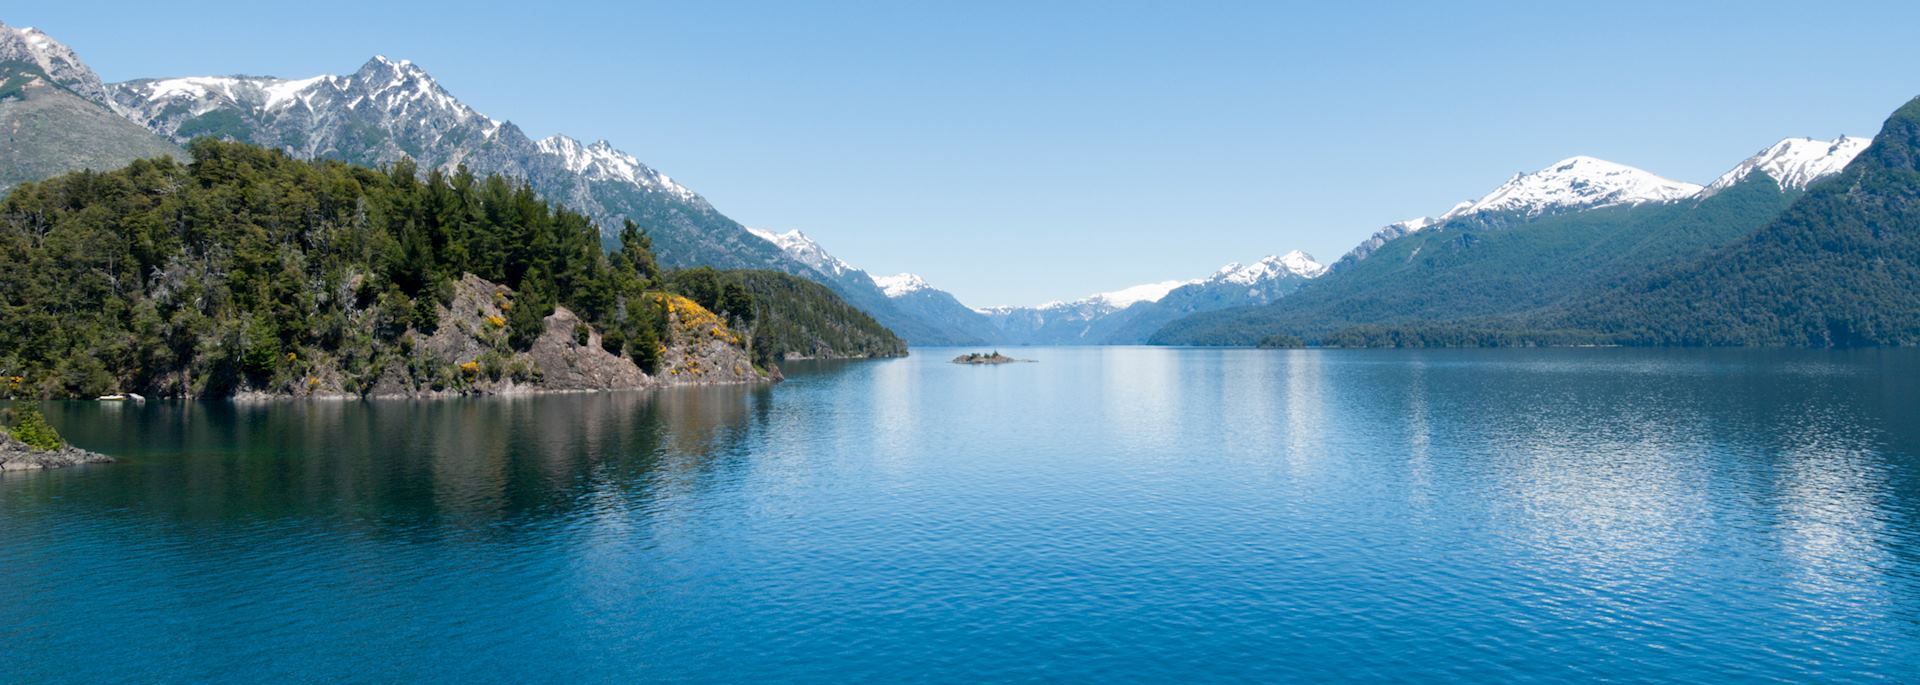 Lago Nahuel Huapi near Bariloche